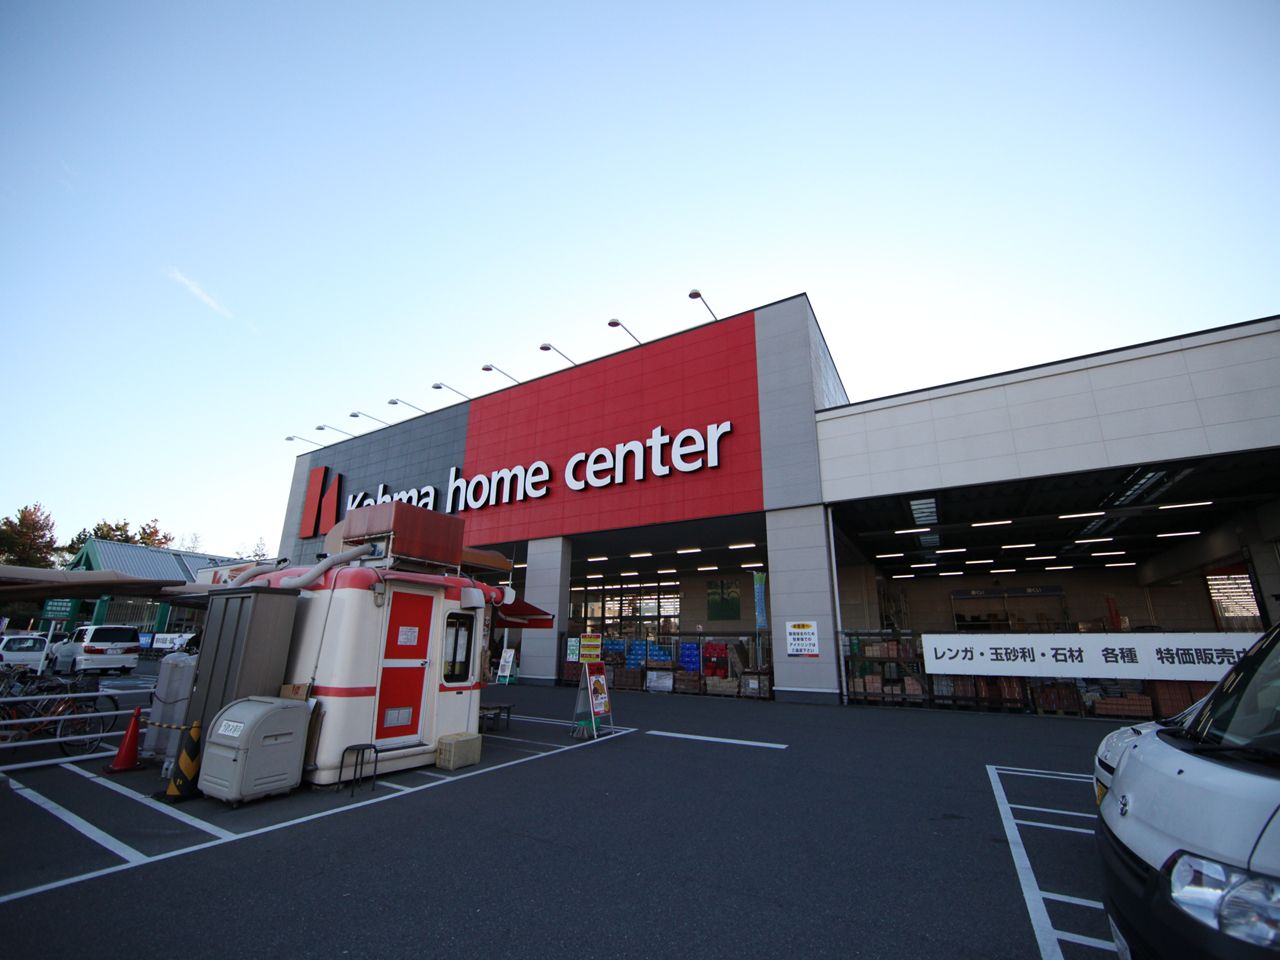 Home center. 1400m to Kama home improvement Motoshio store (hardware store)